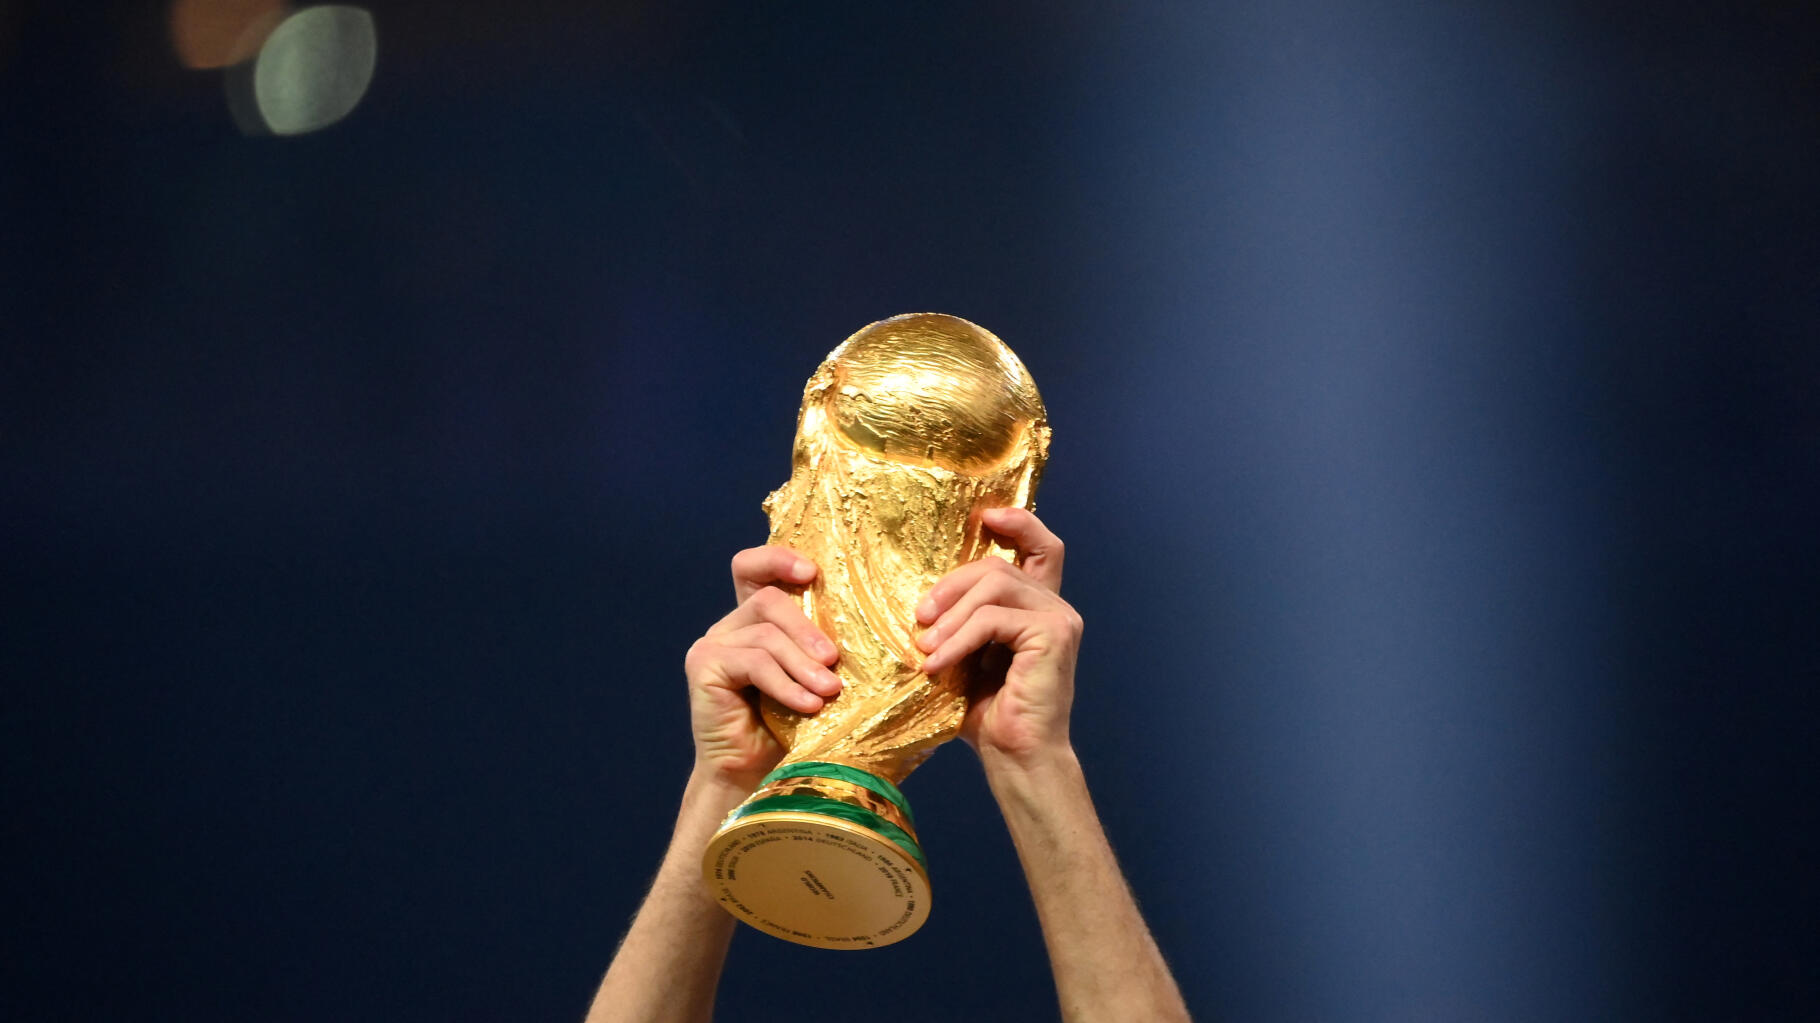   Coupe du monde de football 2034 : l’Arabie saoudite désormais seule en lice pour l’organisation  